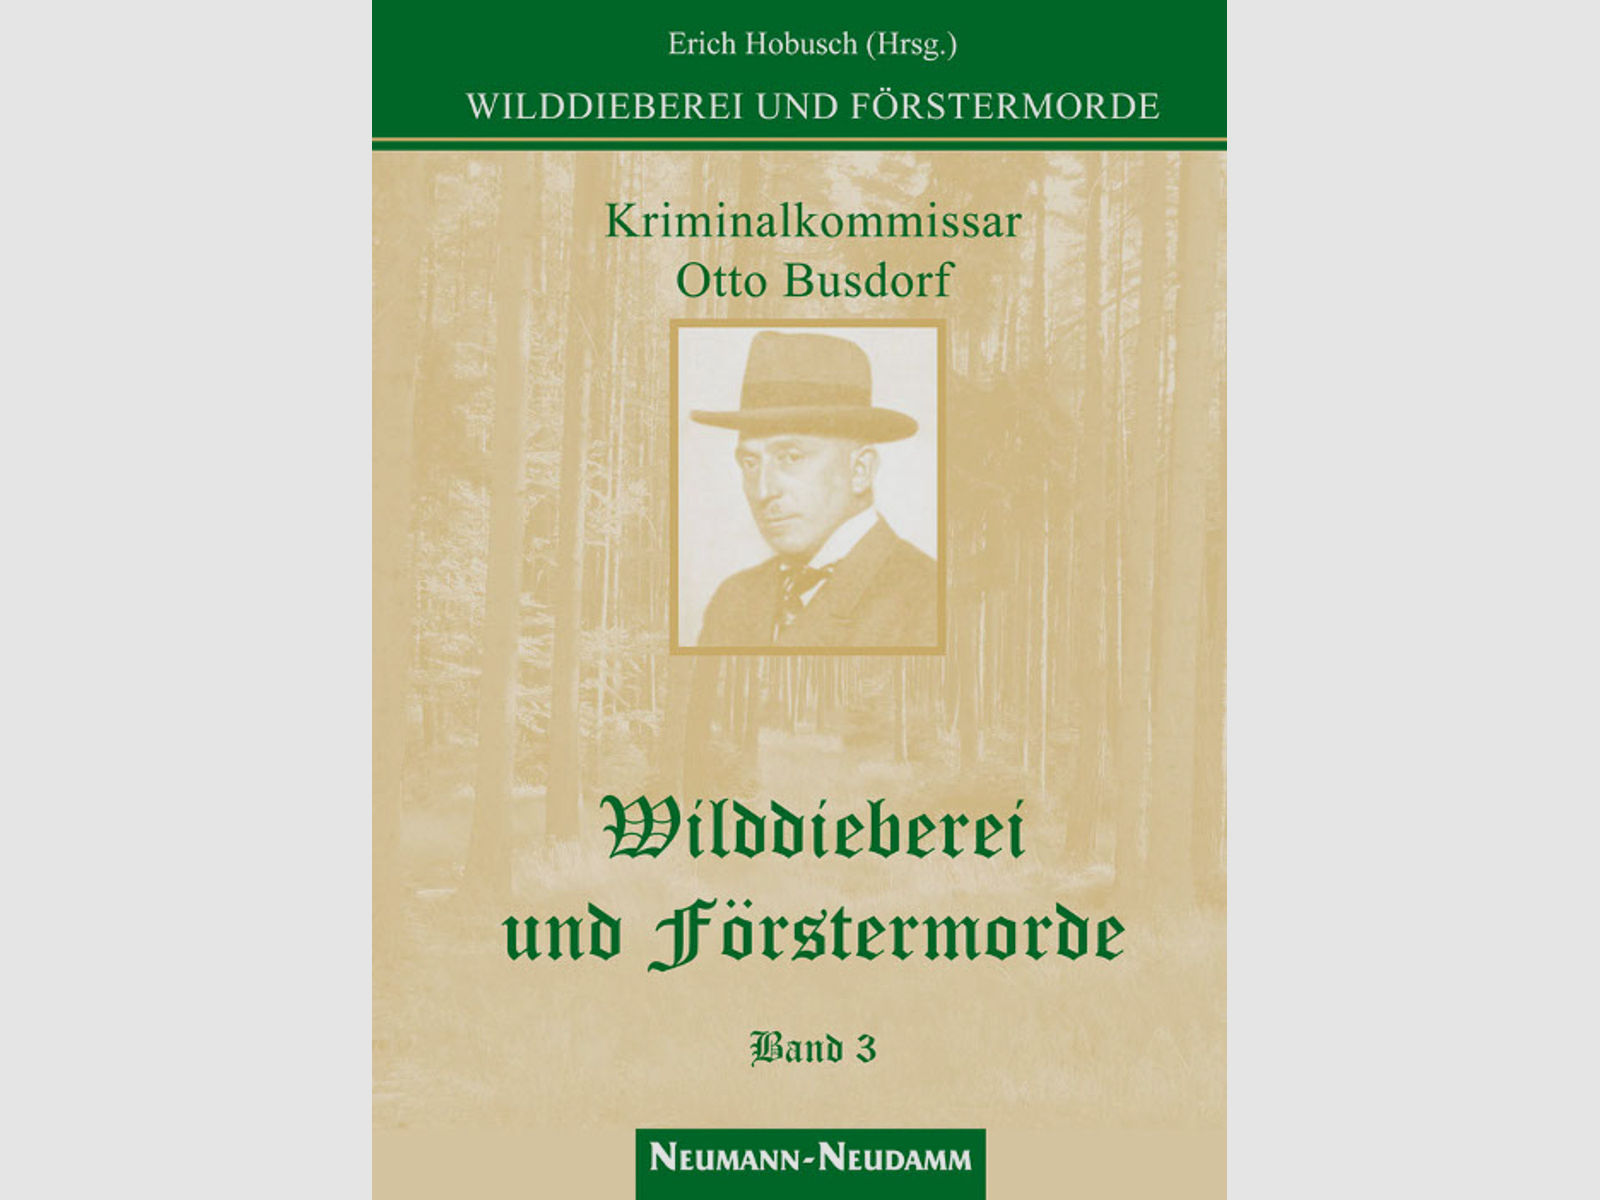 Hobusch (Hrsg.), Wilddieberei und Förstermorde Band 3